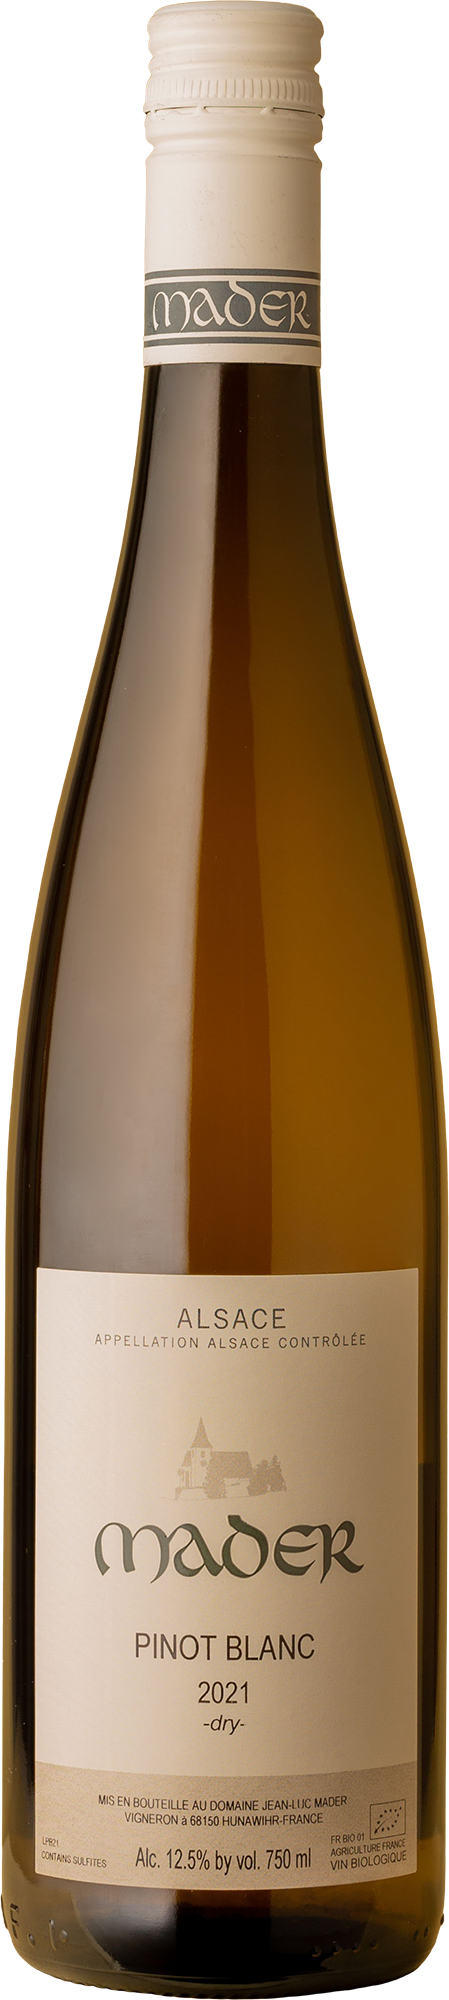 Mader - Pinot Blanc 2021 White Wine